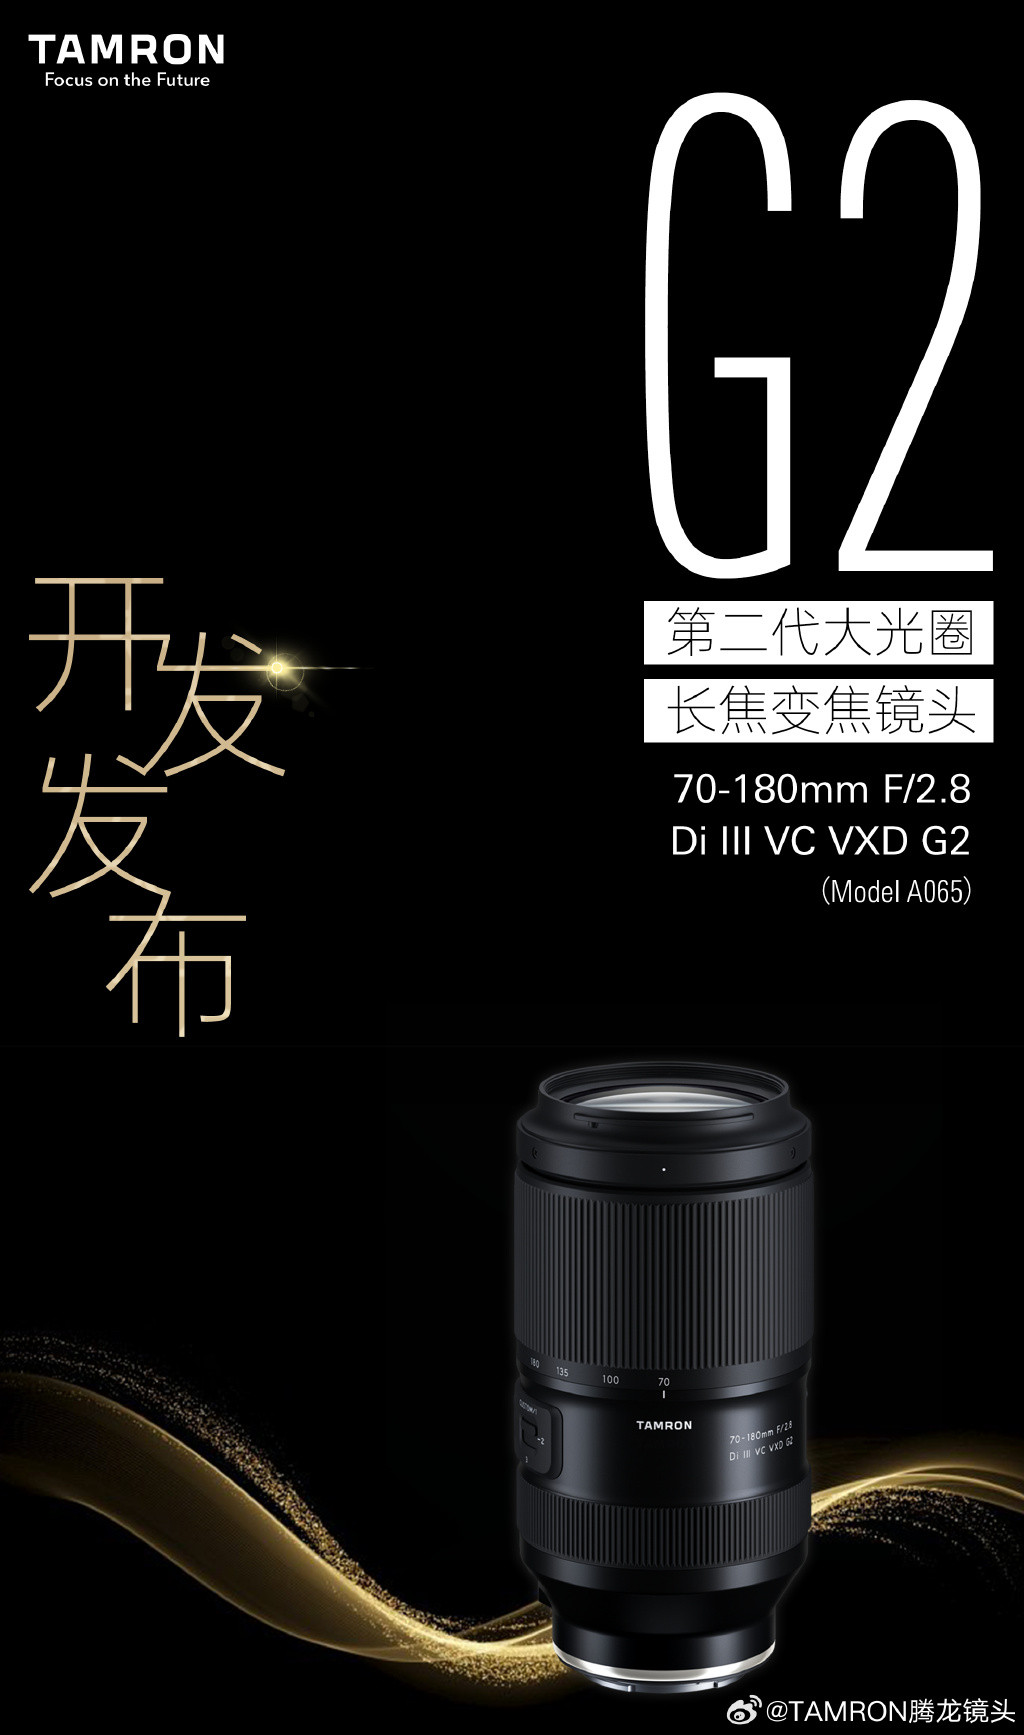 腾龙宣布研发70-180mm F2.8 Di III VC VXD G2镜头